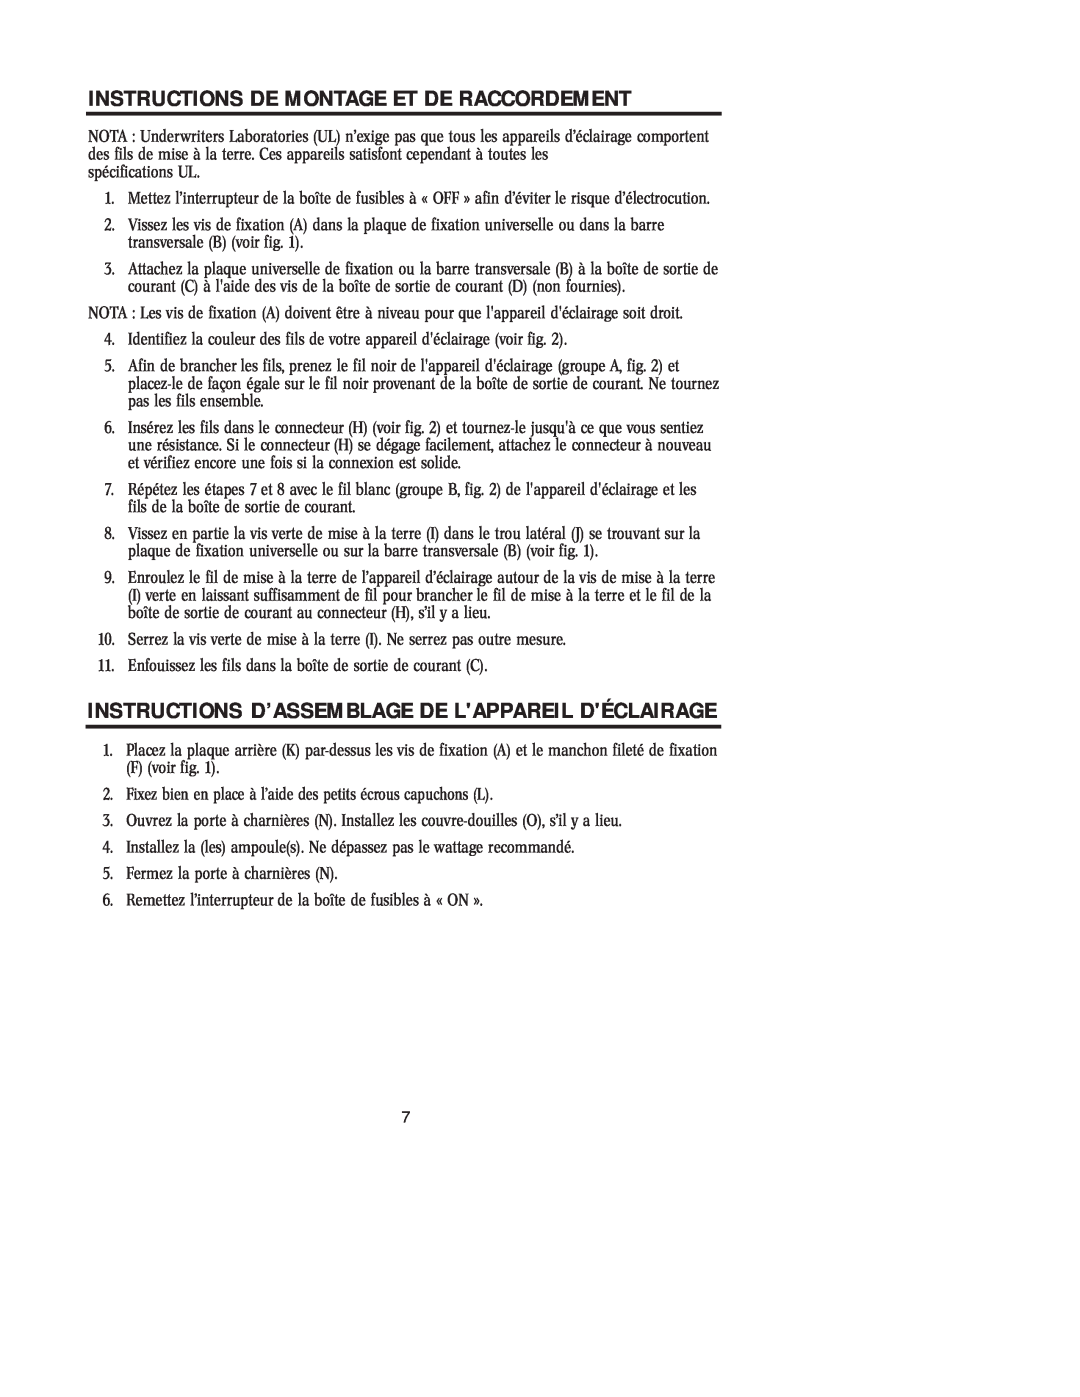 Westinghouse W-125 Instructions D’Assemblage De Lappareil Déclairage, Instructions De Montage Et De Raccordement 